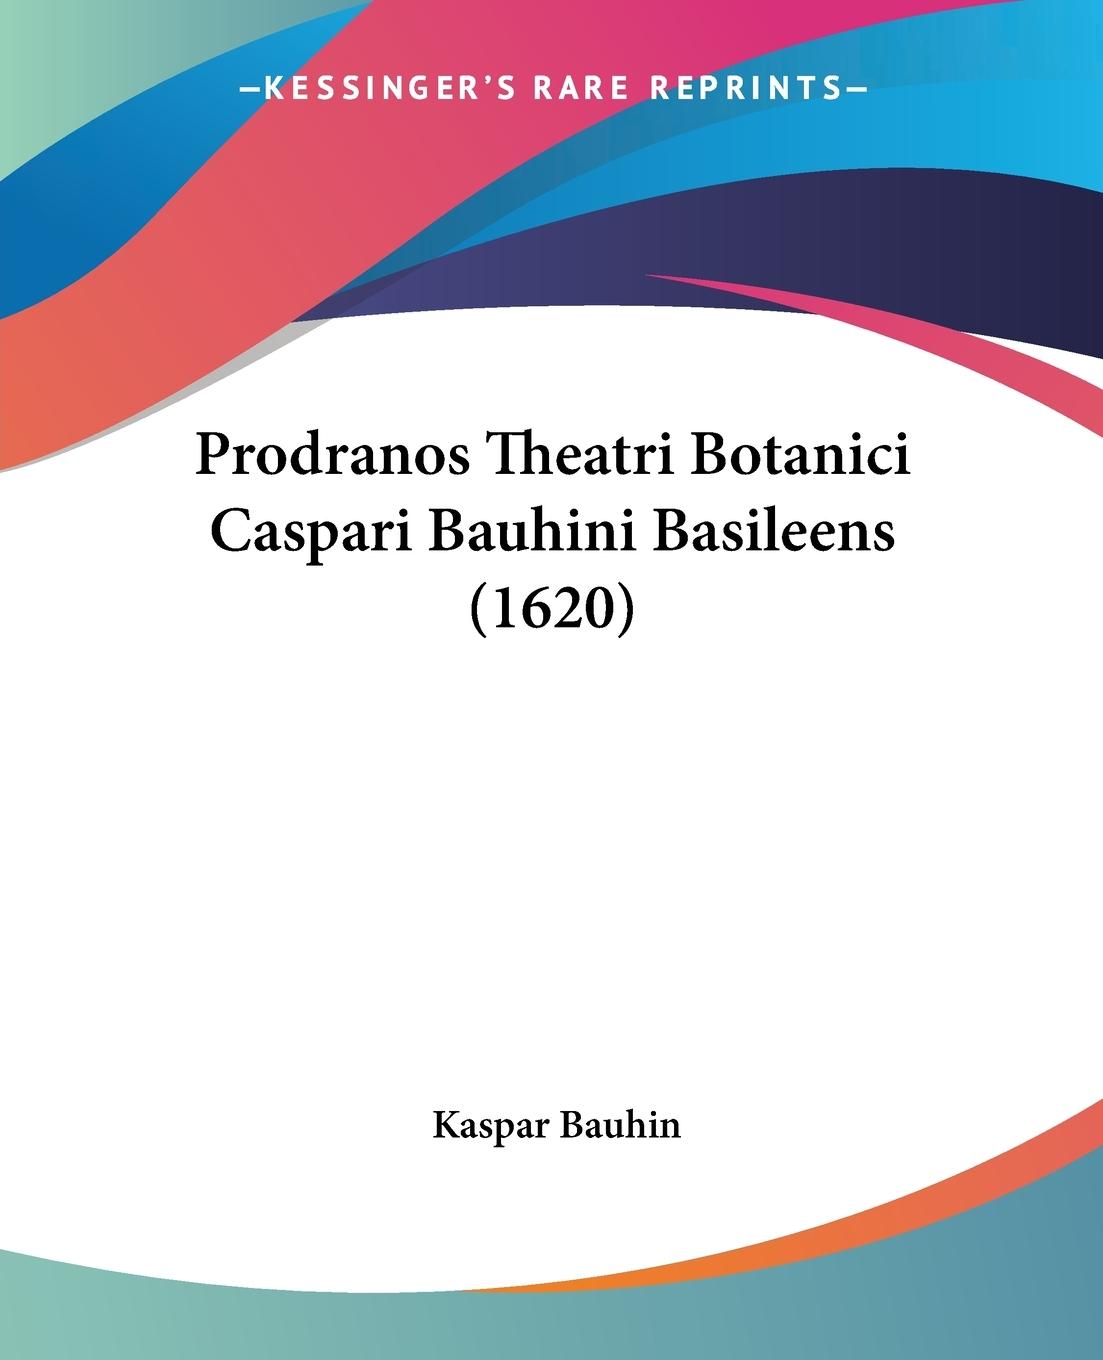 Prodranos Theatri Botanici Caspari Bauhini Basileens (1620) - Bauhin, Kaspar